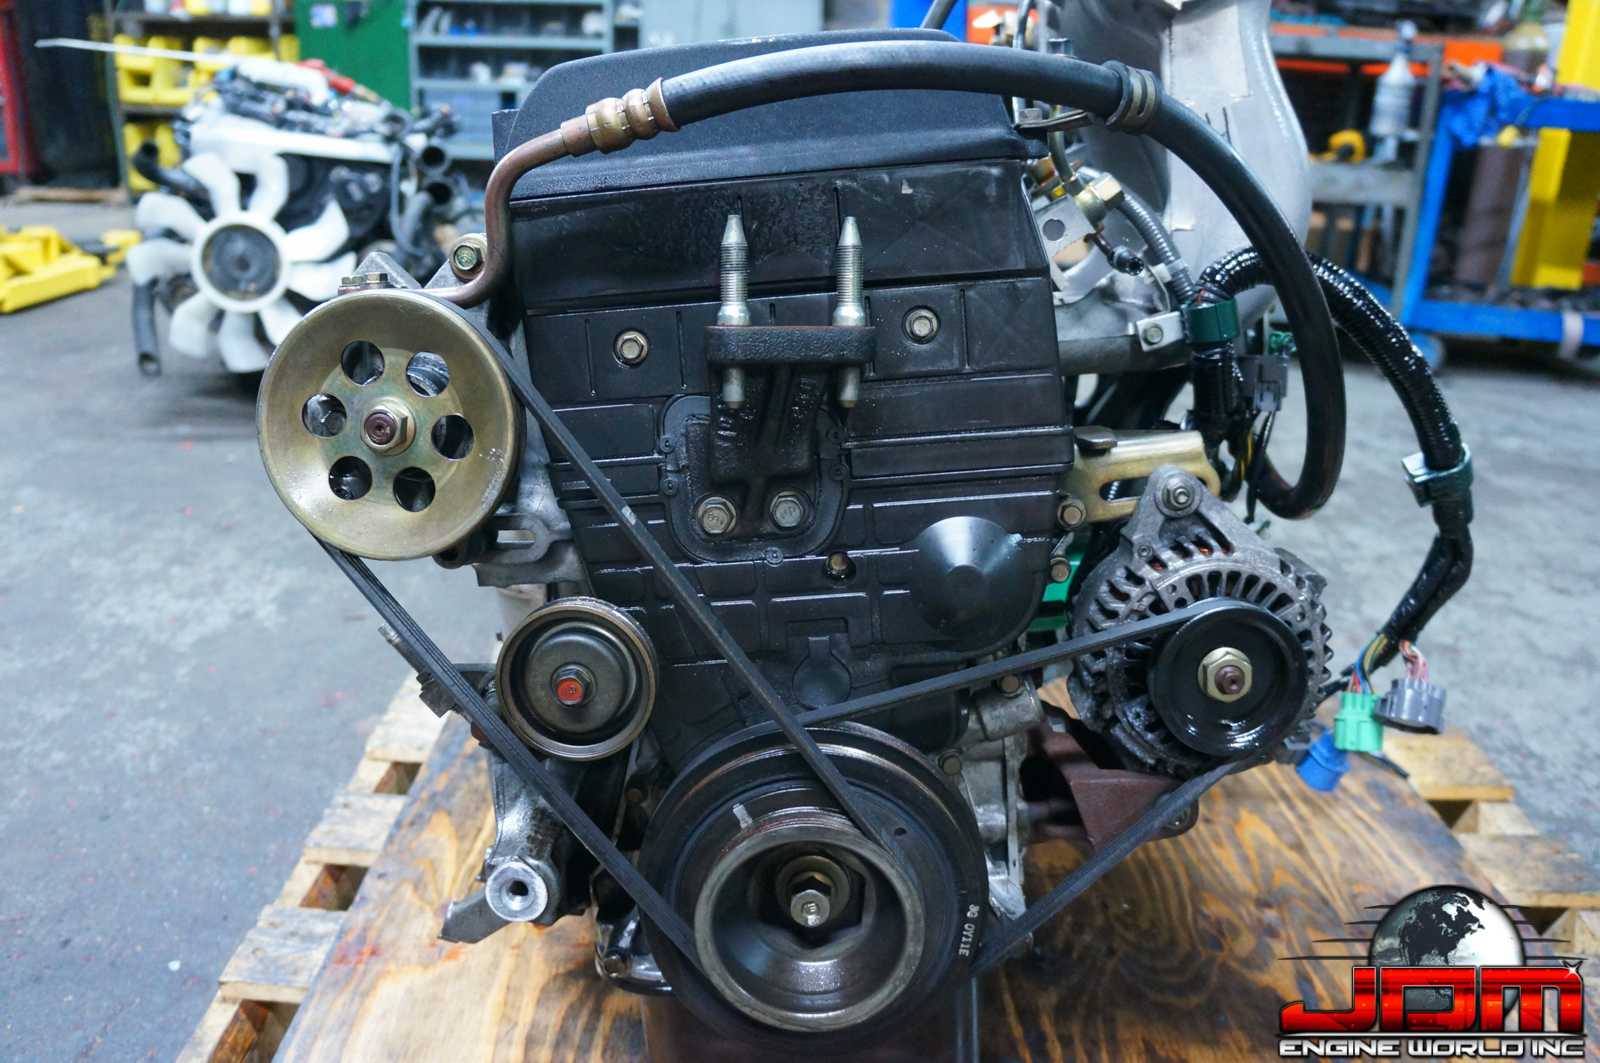 Двигатели срв хонда: характеристики, надежность, ремонтопригодность